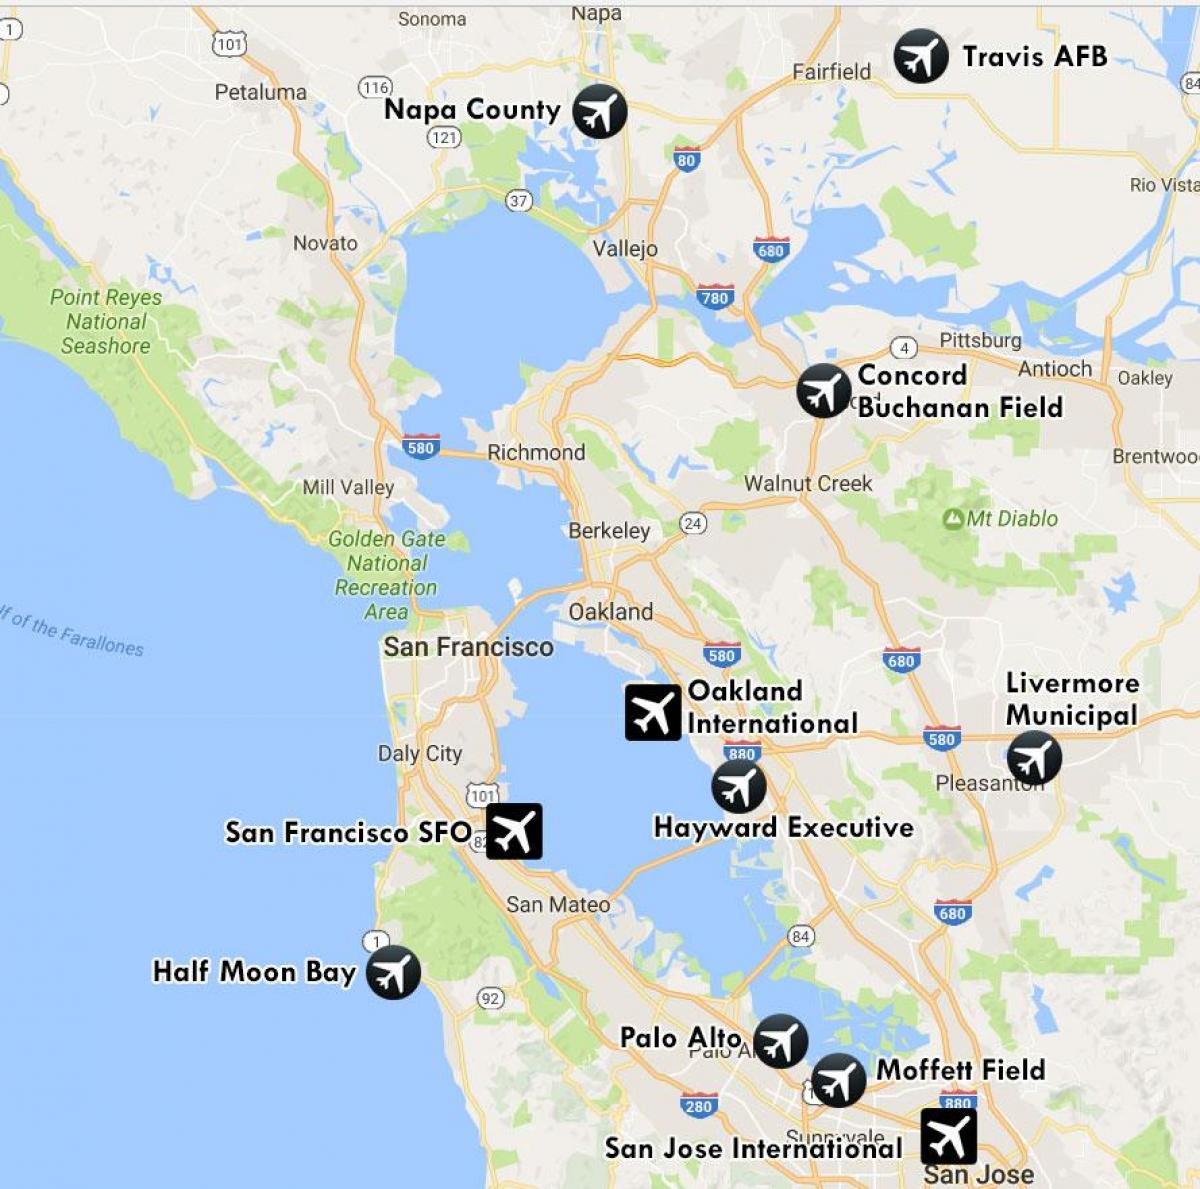 Flughäfen in der Nähe von San Francisco anzeigen